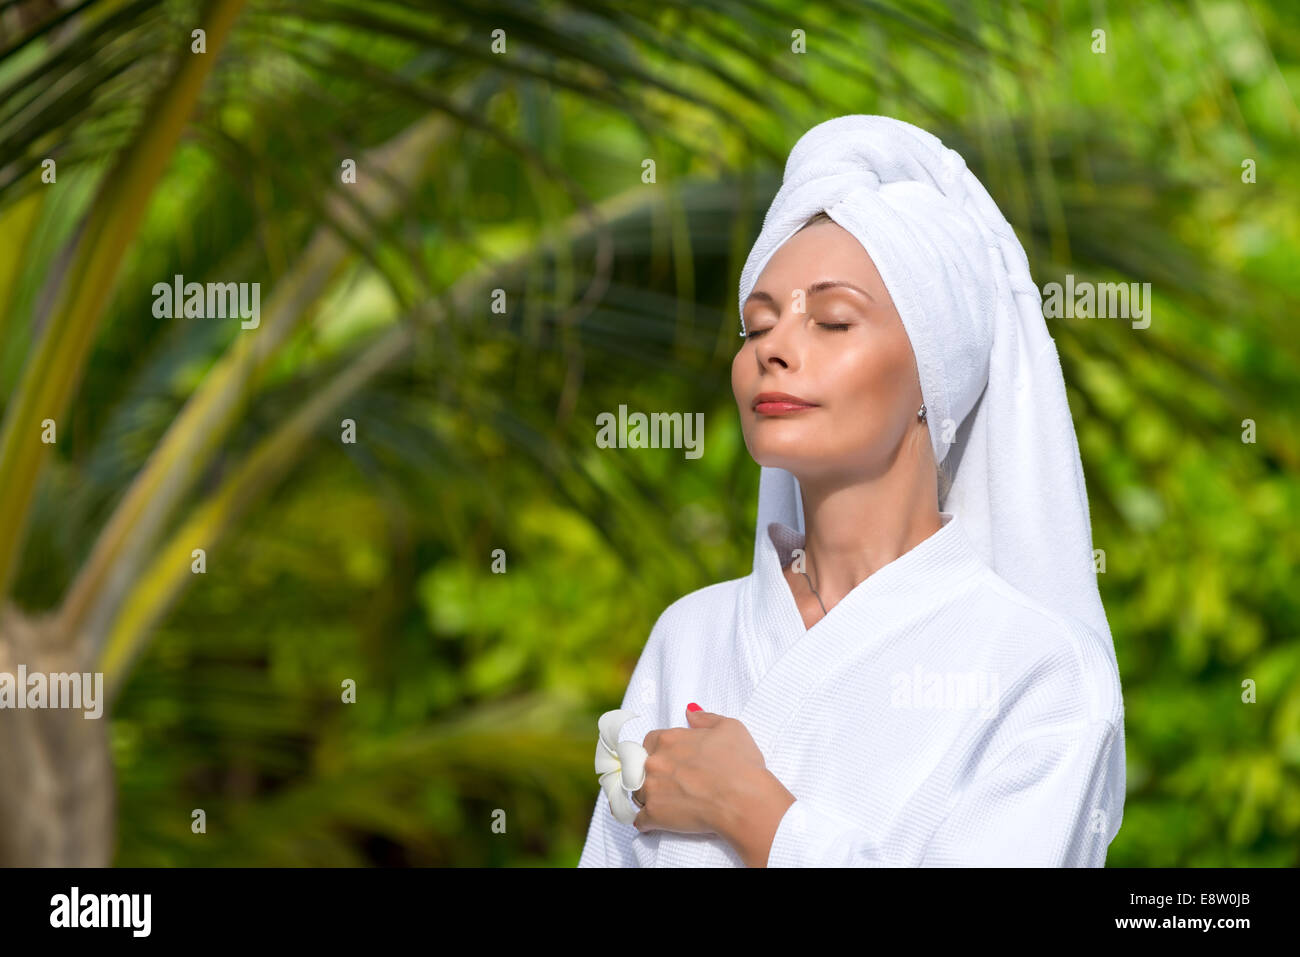 Gesundheit, Wellness und Beauty-Konzept - schöne Frau Handtuch Stockfoto